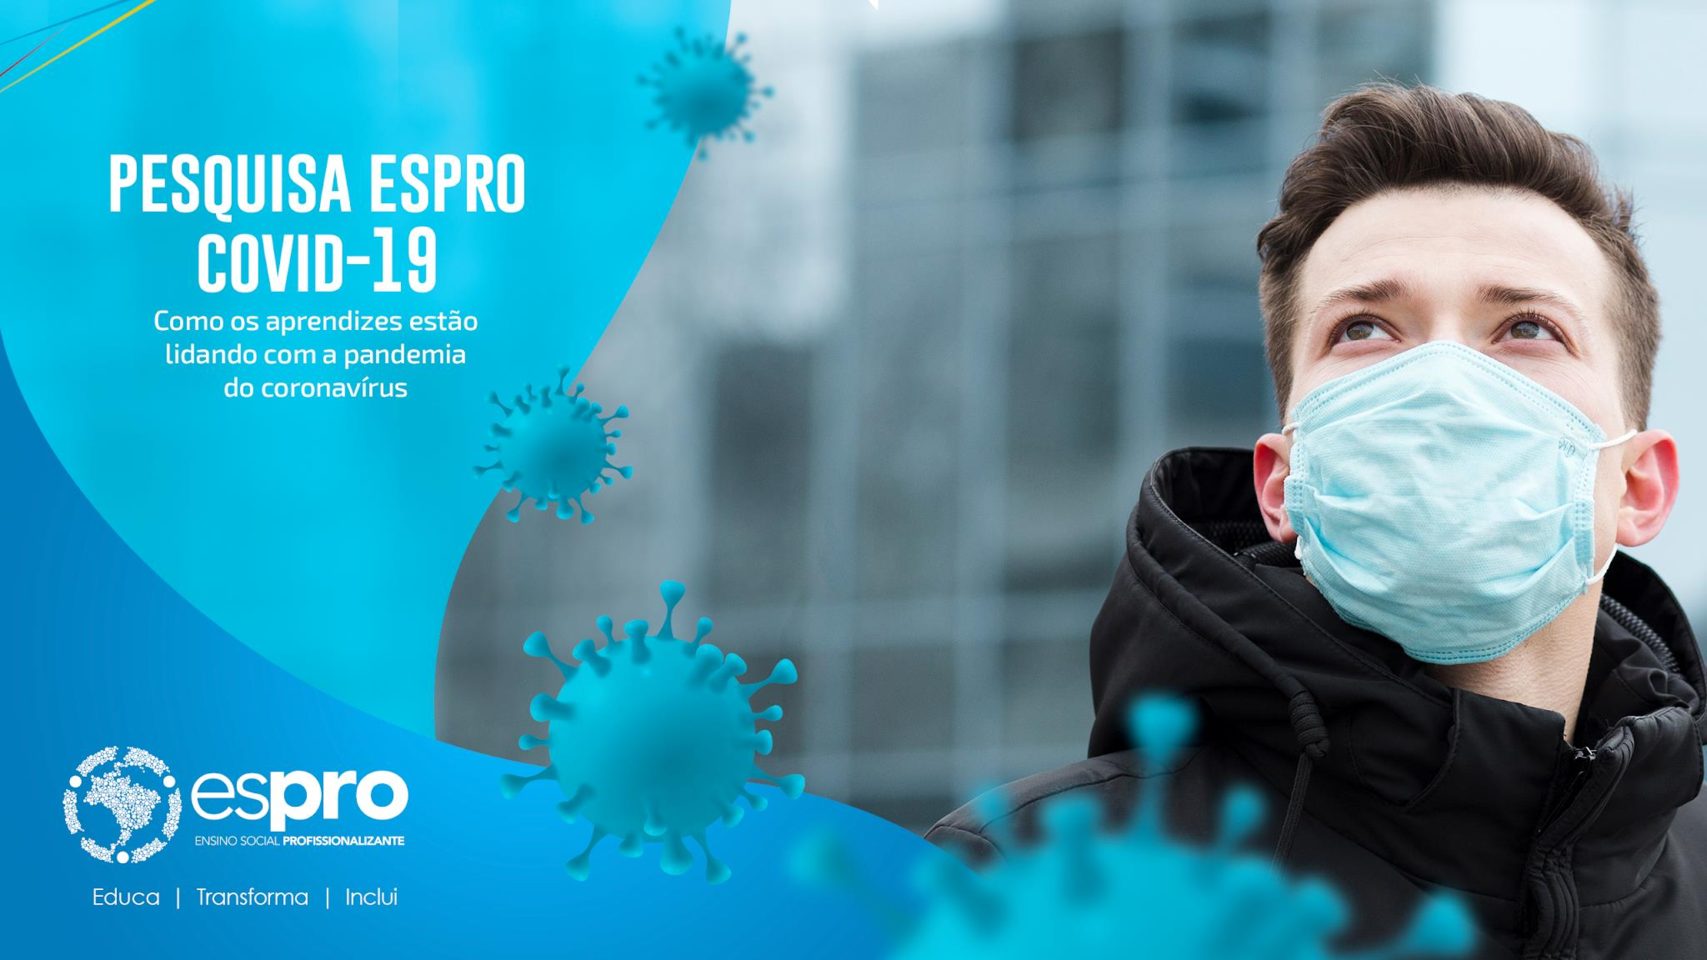 Pesquisa Espro mapeia comportamento de adolescentes e jovens frente à pandemia da Covid-19